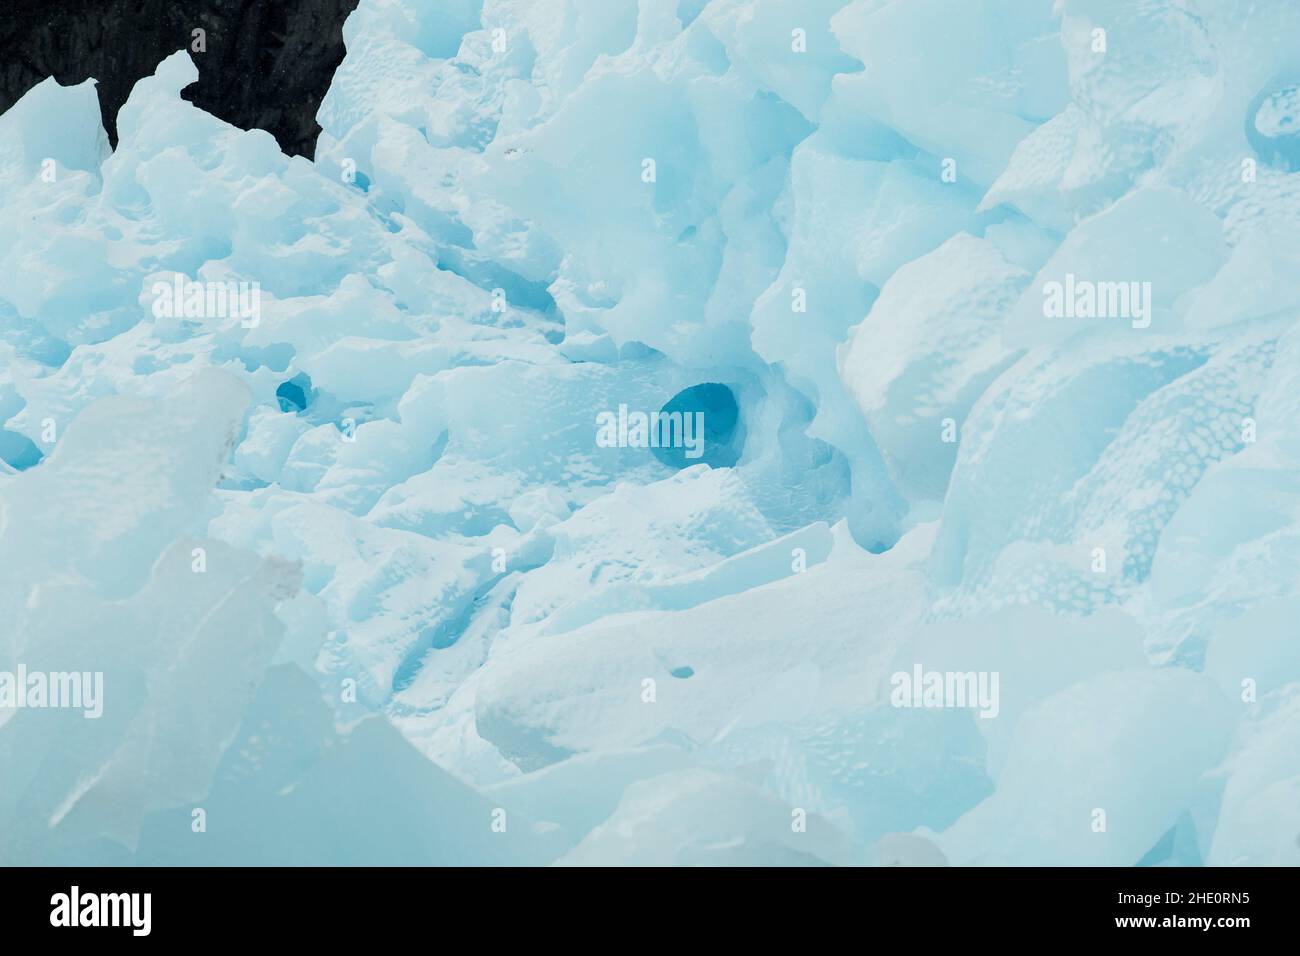 Frischer Schnee auf einem blauen Eisberg. Stockfoto